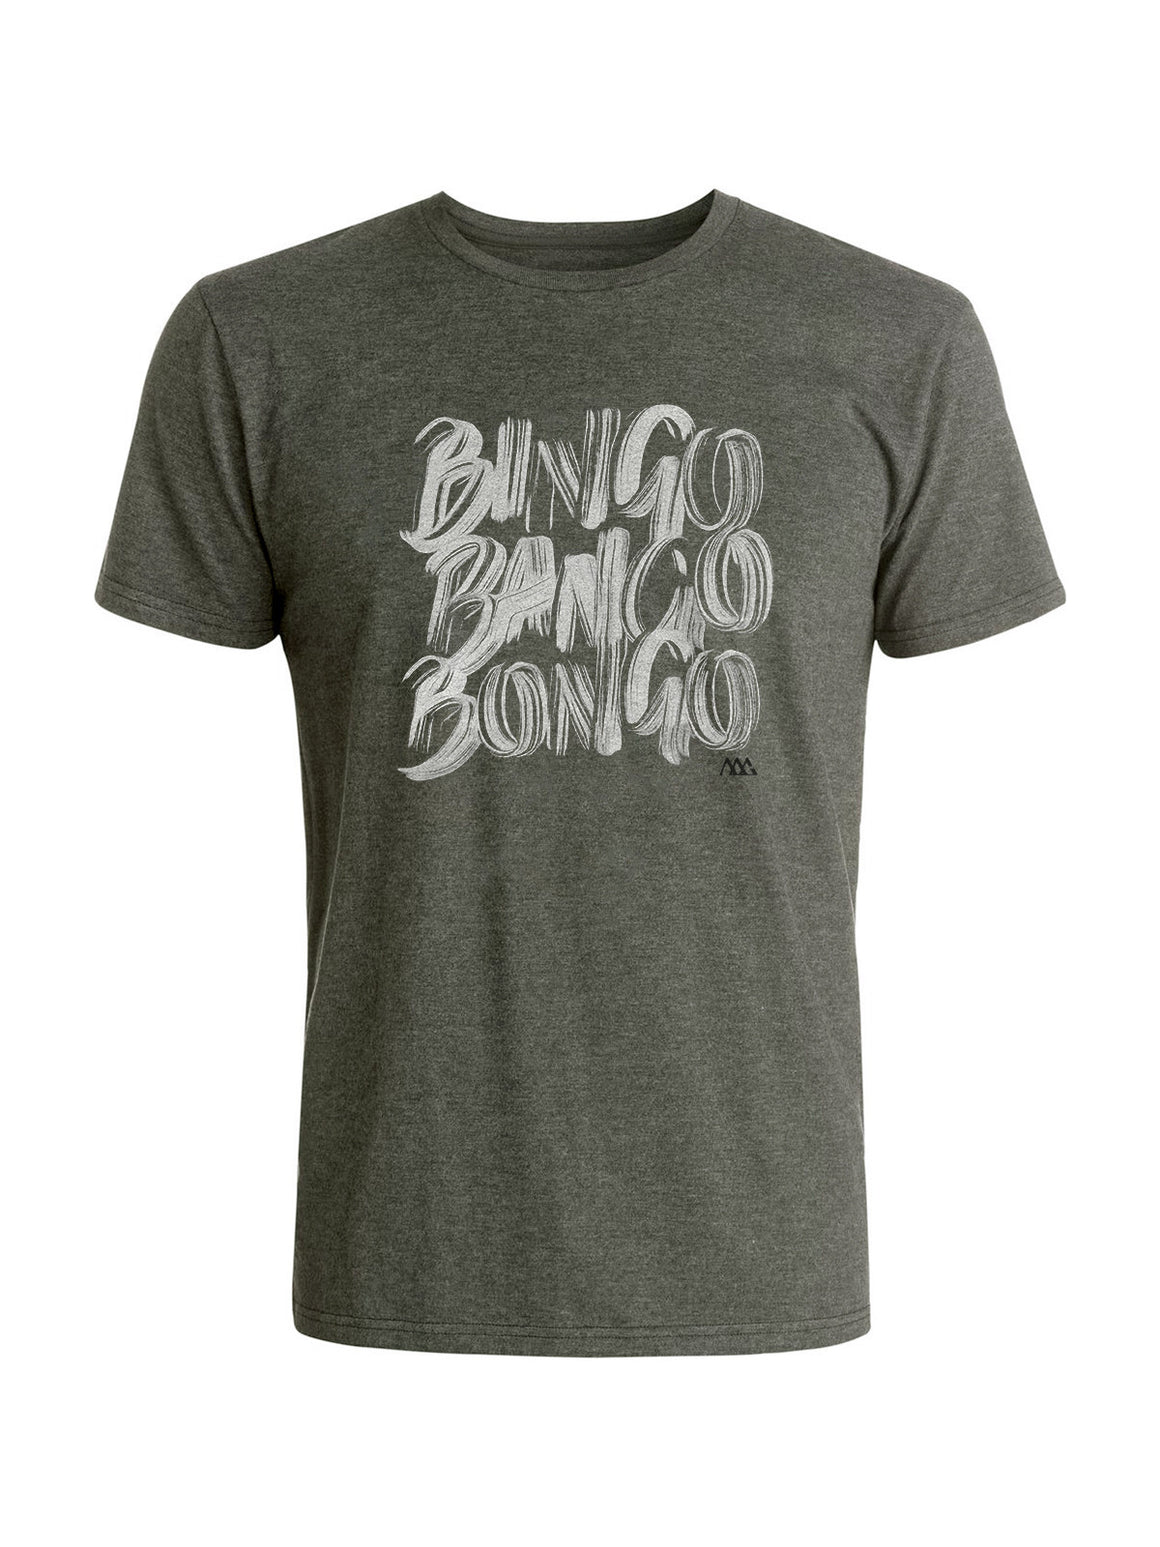 Bingo Tee Shirt - Platinum (White / Black)